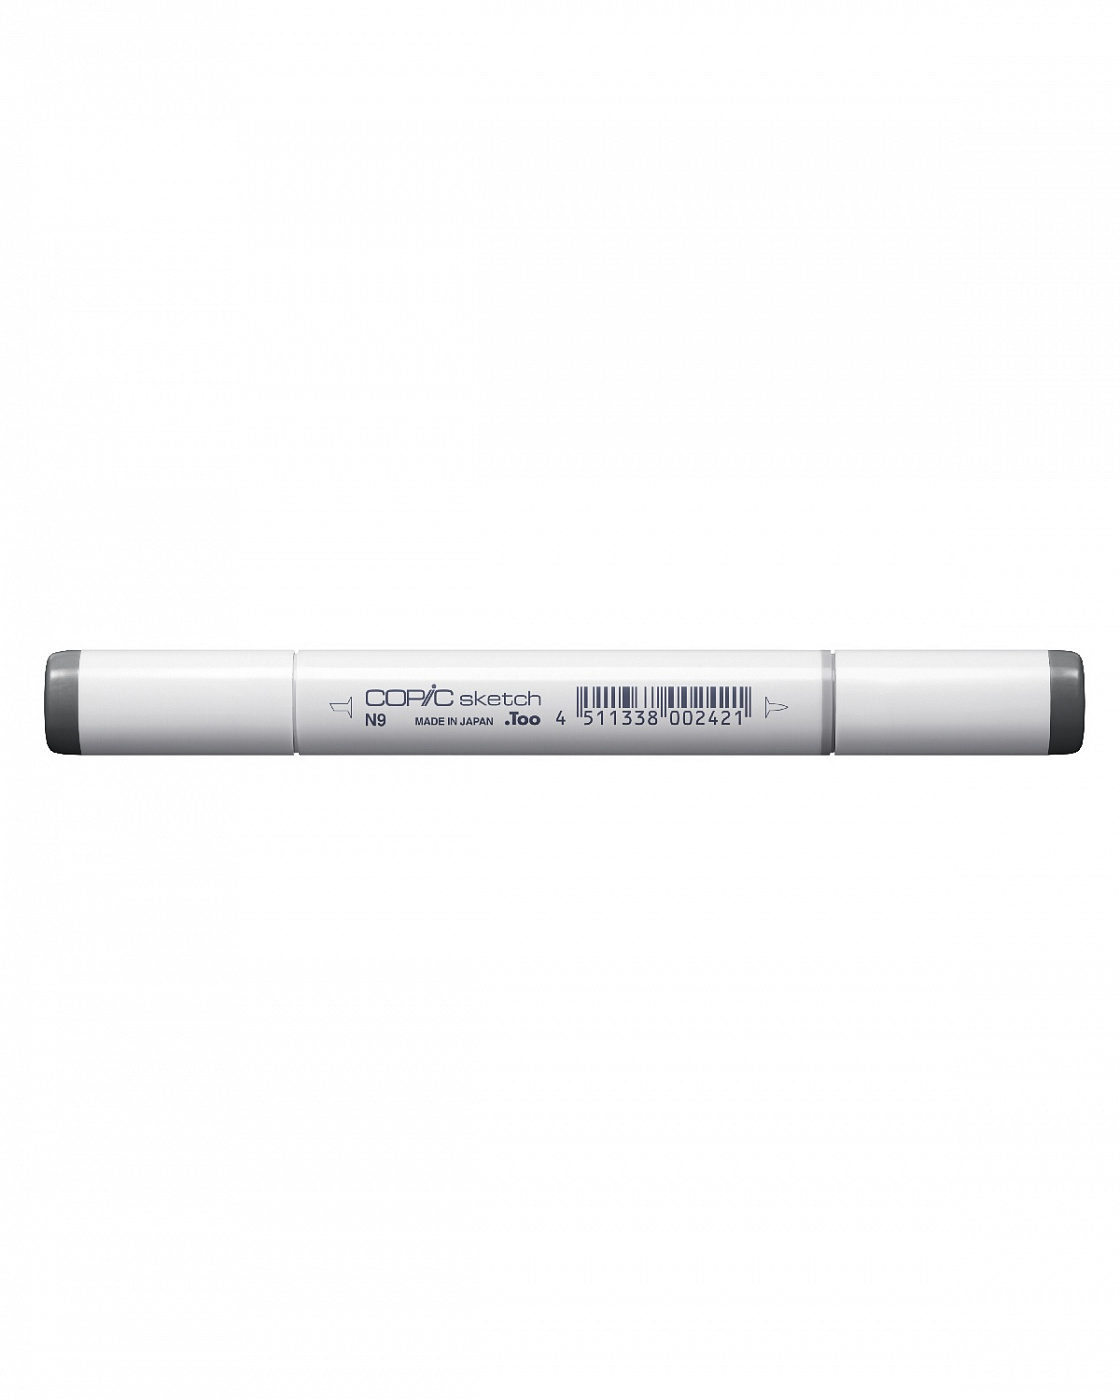 Маркер COPIC sketch N9 (нейтральный серый, neutral gray) (оттенок №9) маркер copic n3 нейтральный серый neutral gray оттенок 3